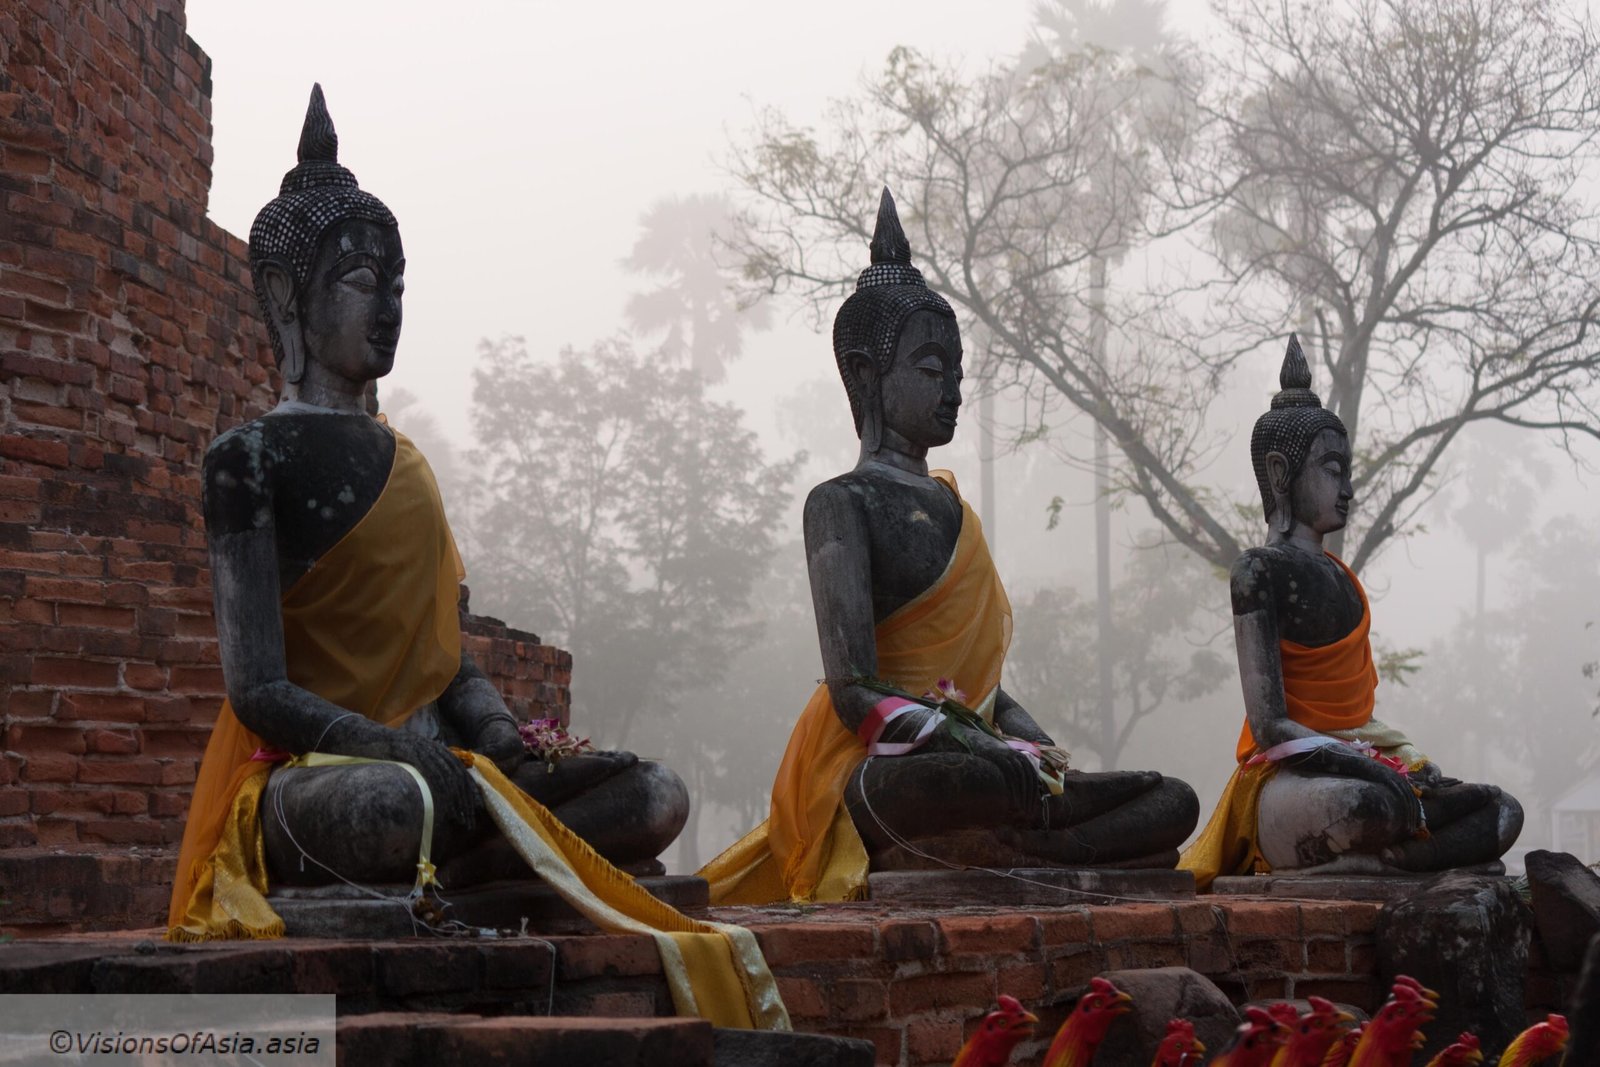 3 Buddhas in morning fog